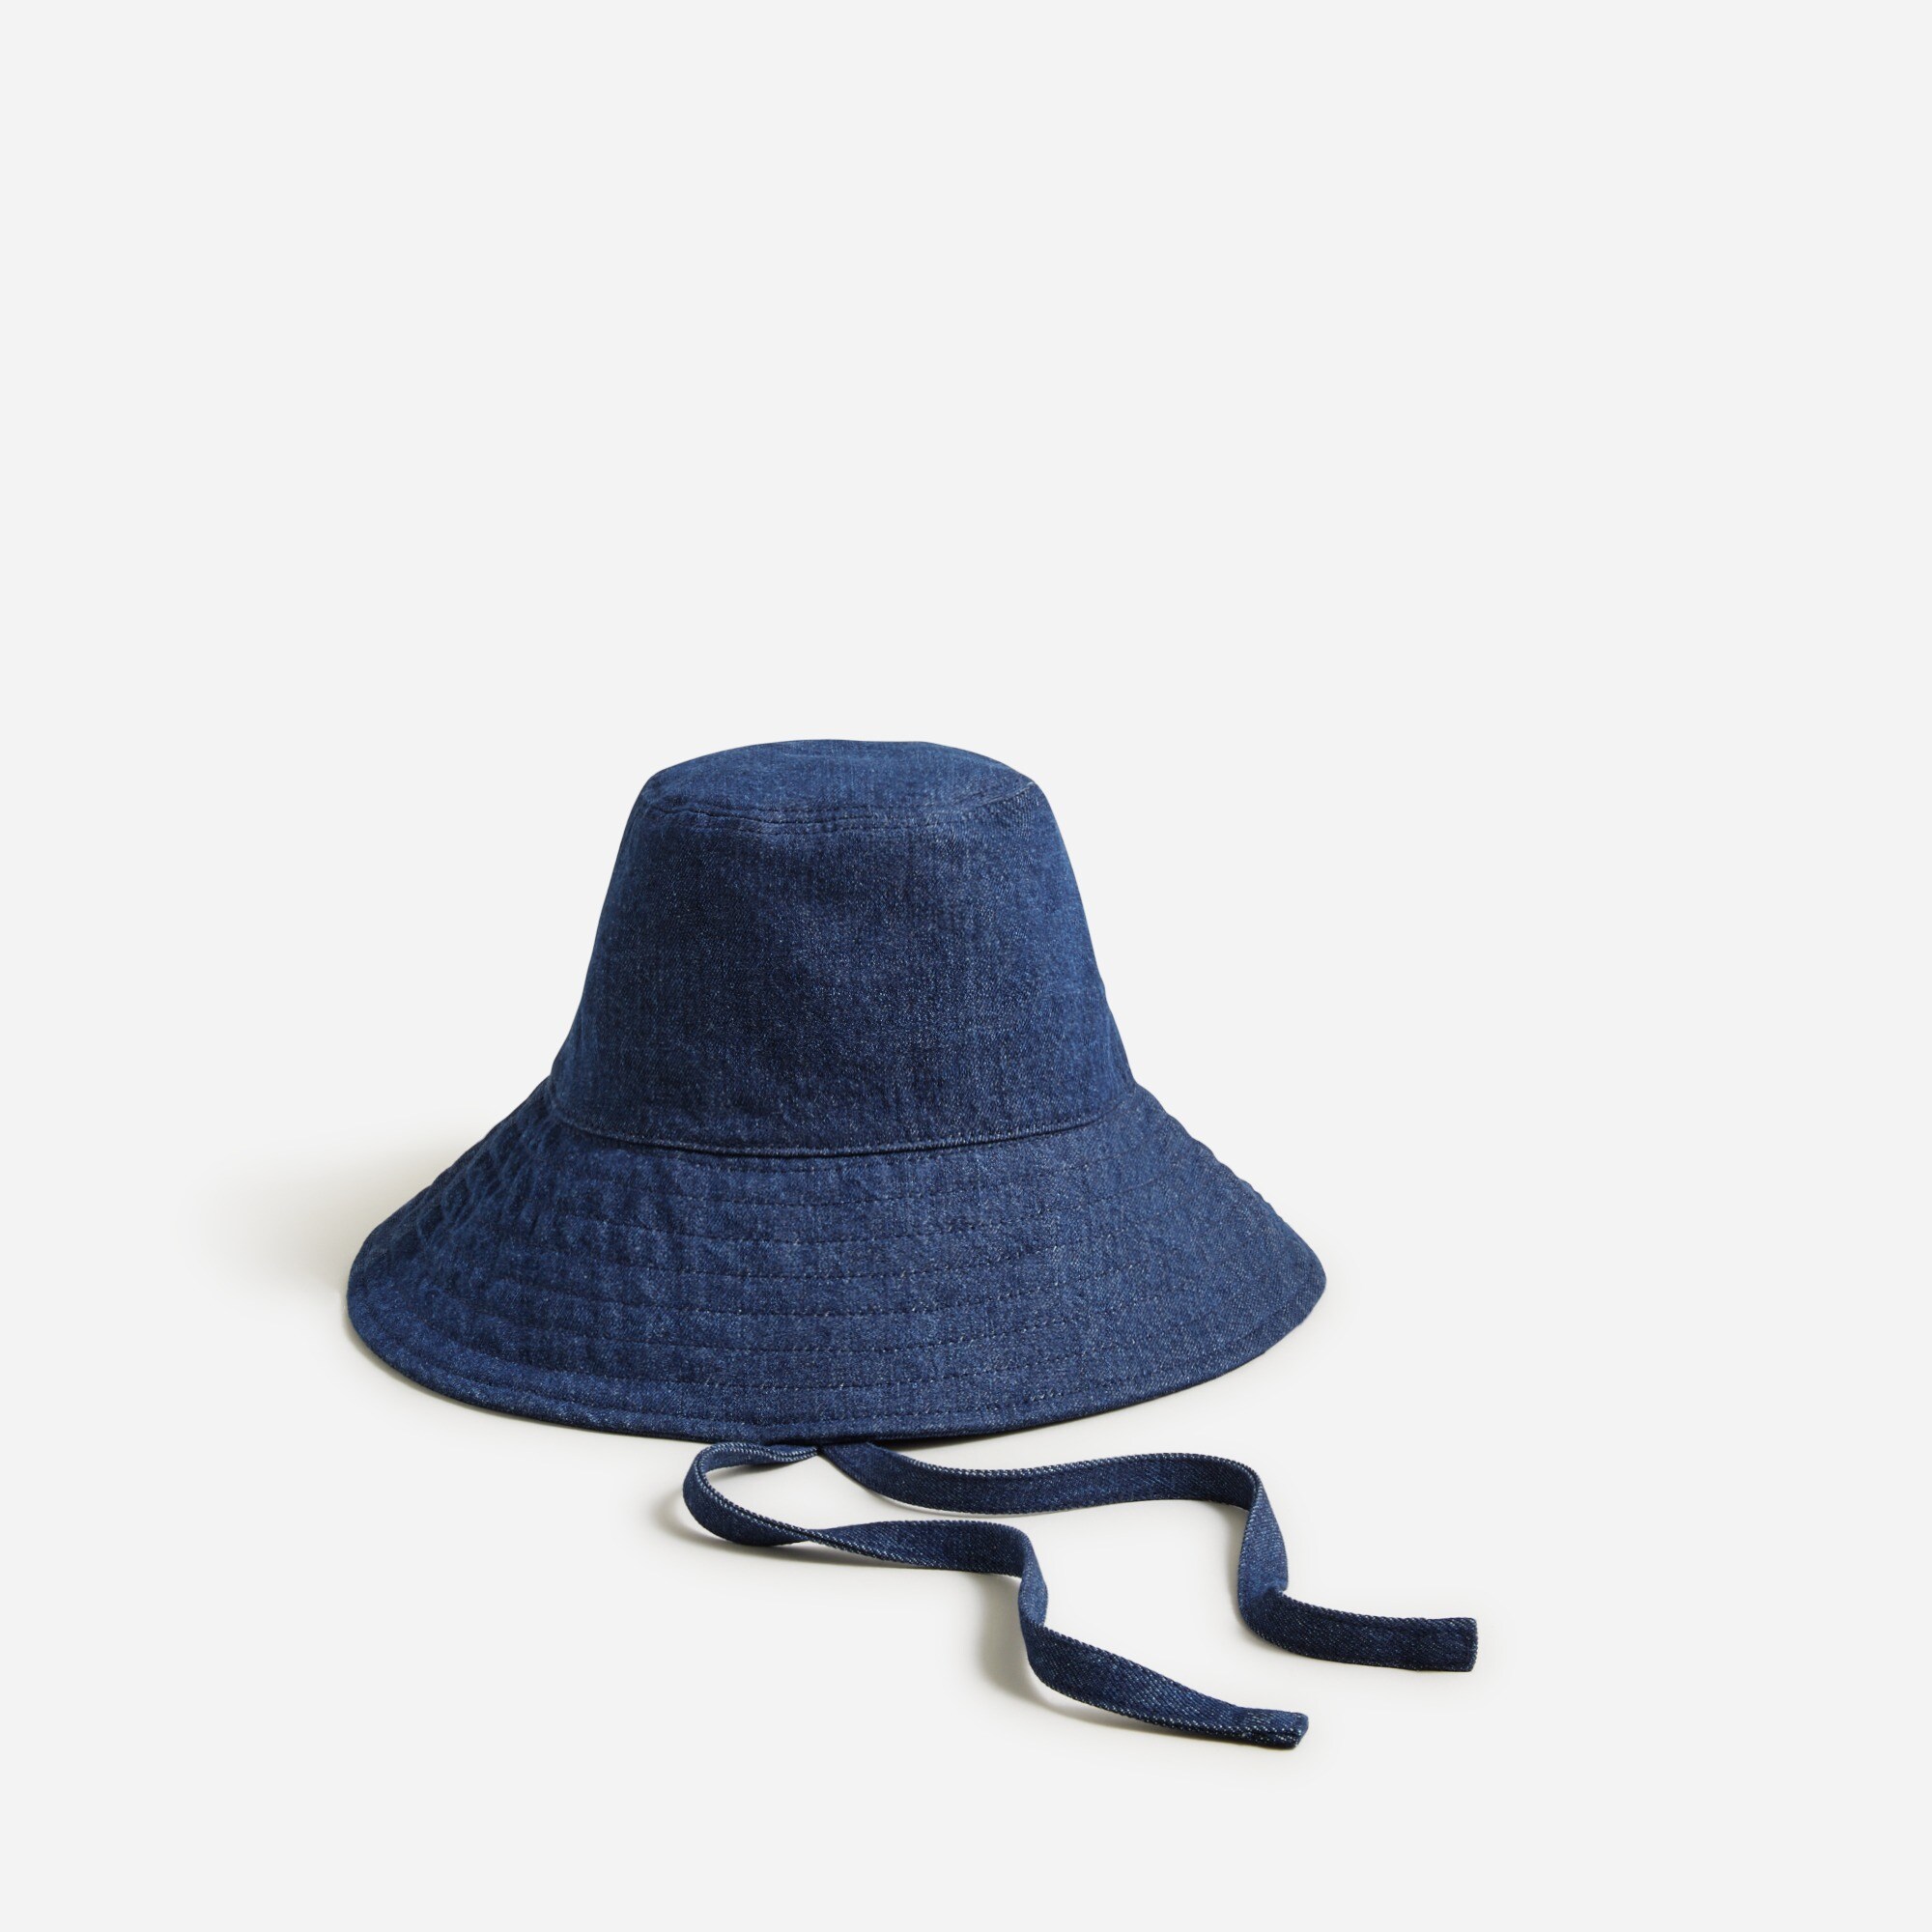  Denim bucket hat with ties